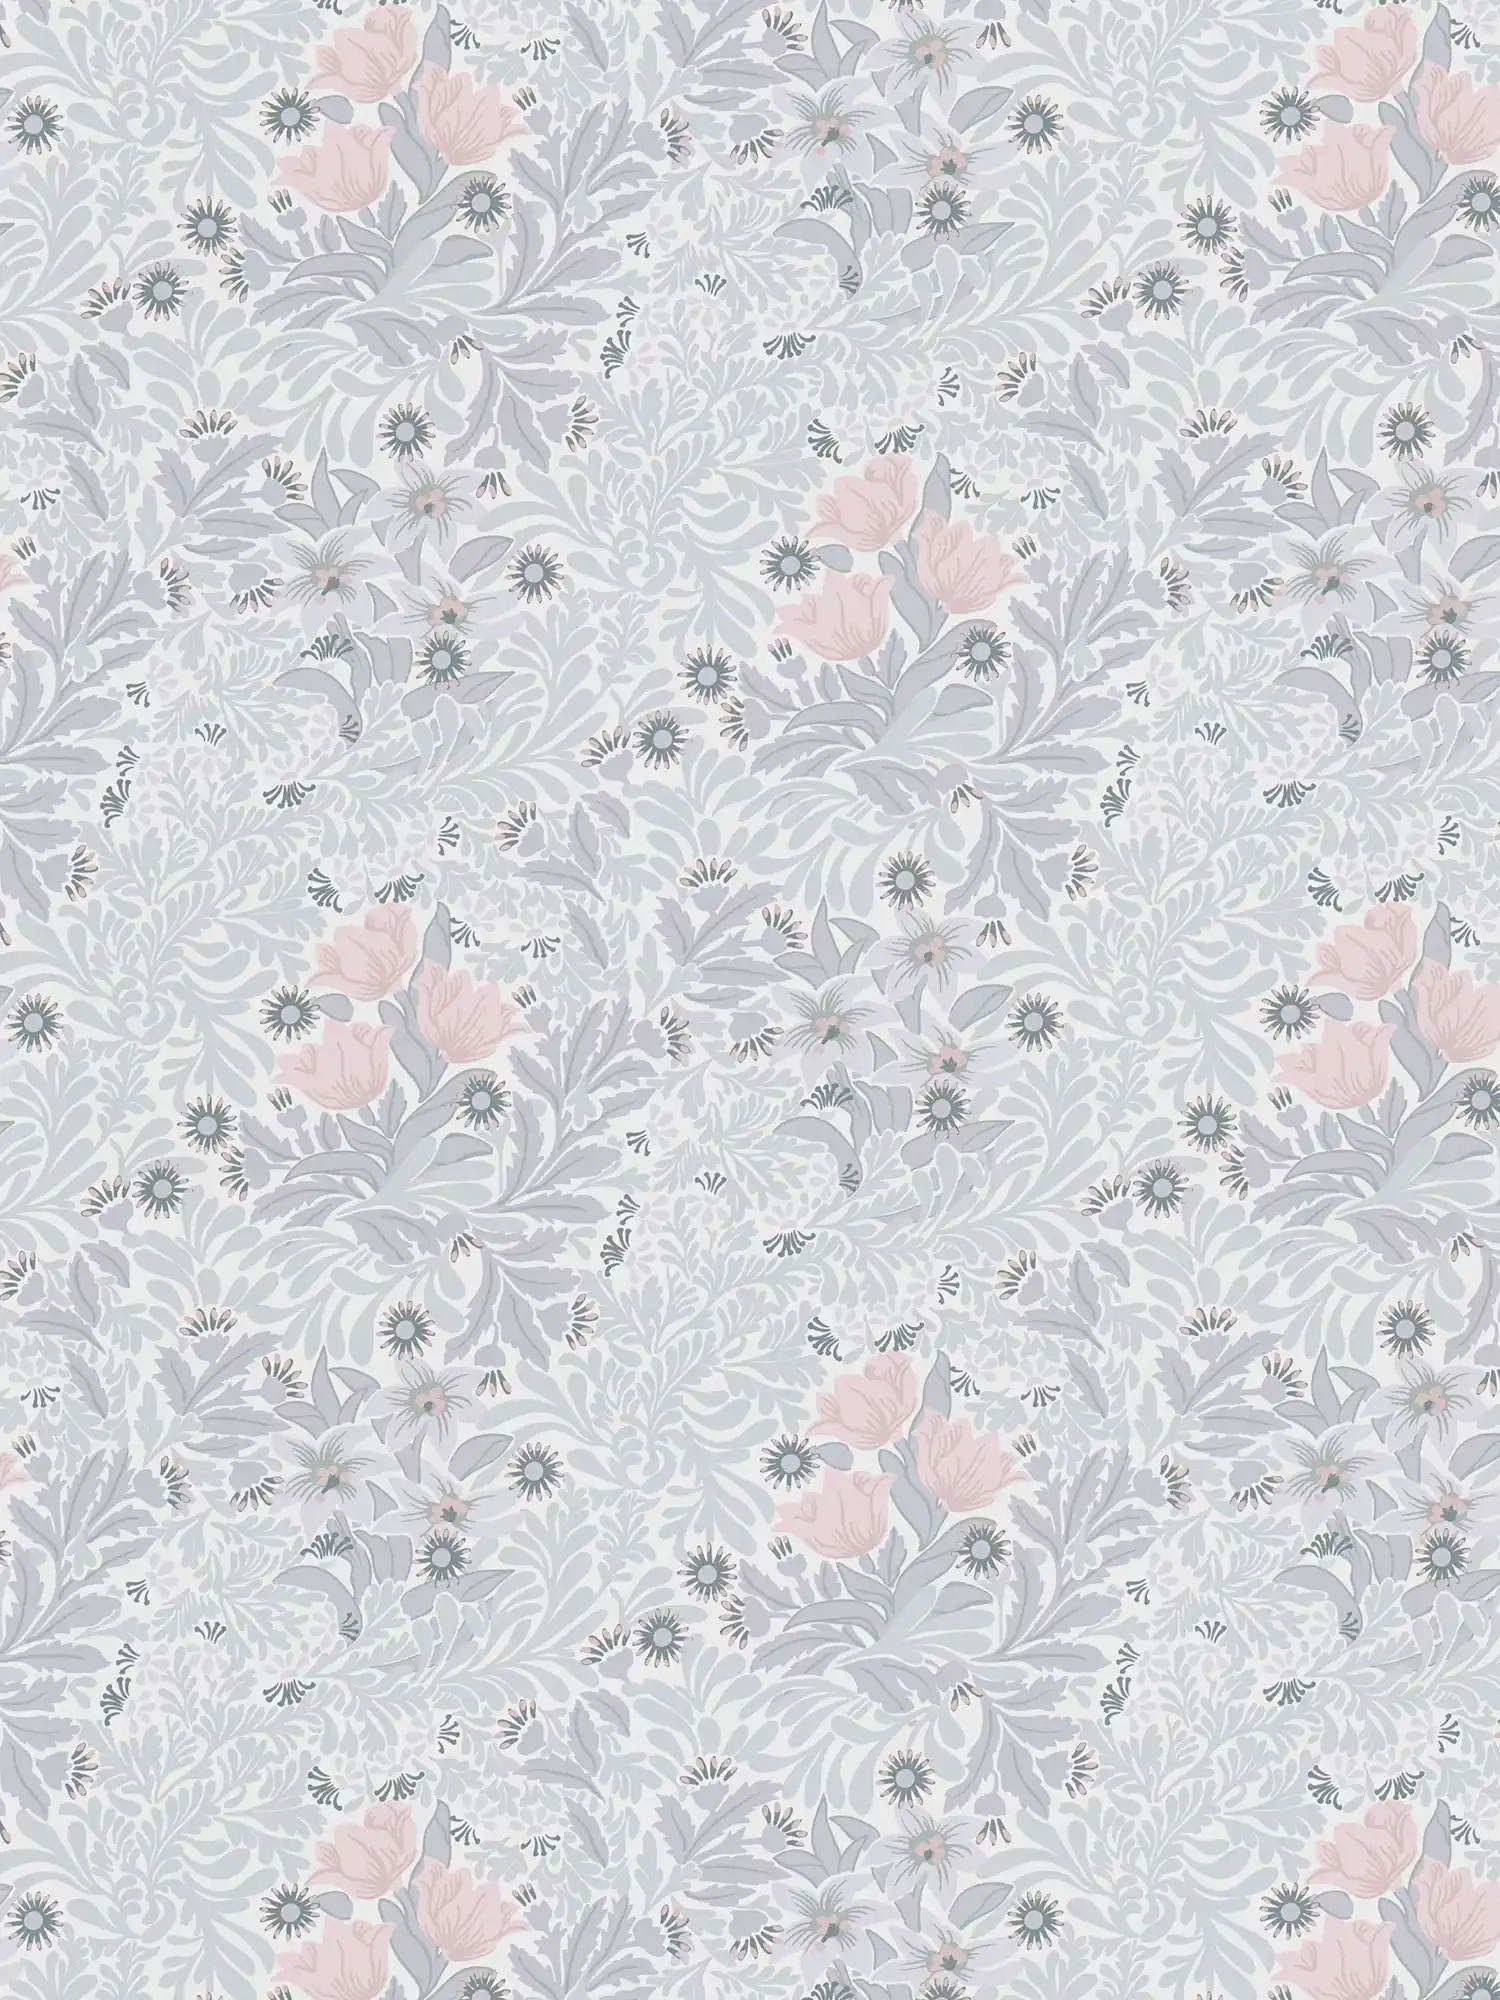         Papel pintado no tejido con motivos florales en tonos suaves - gris, rosa, blanco
    